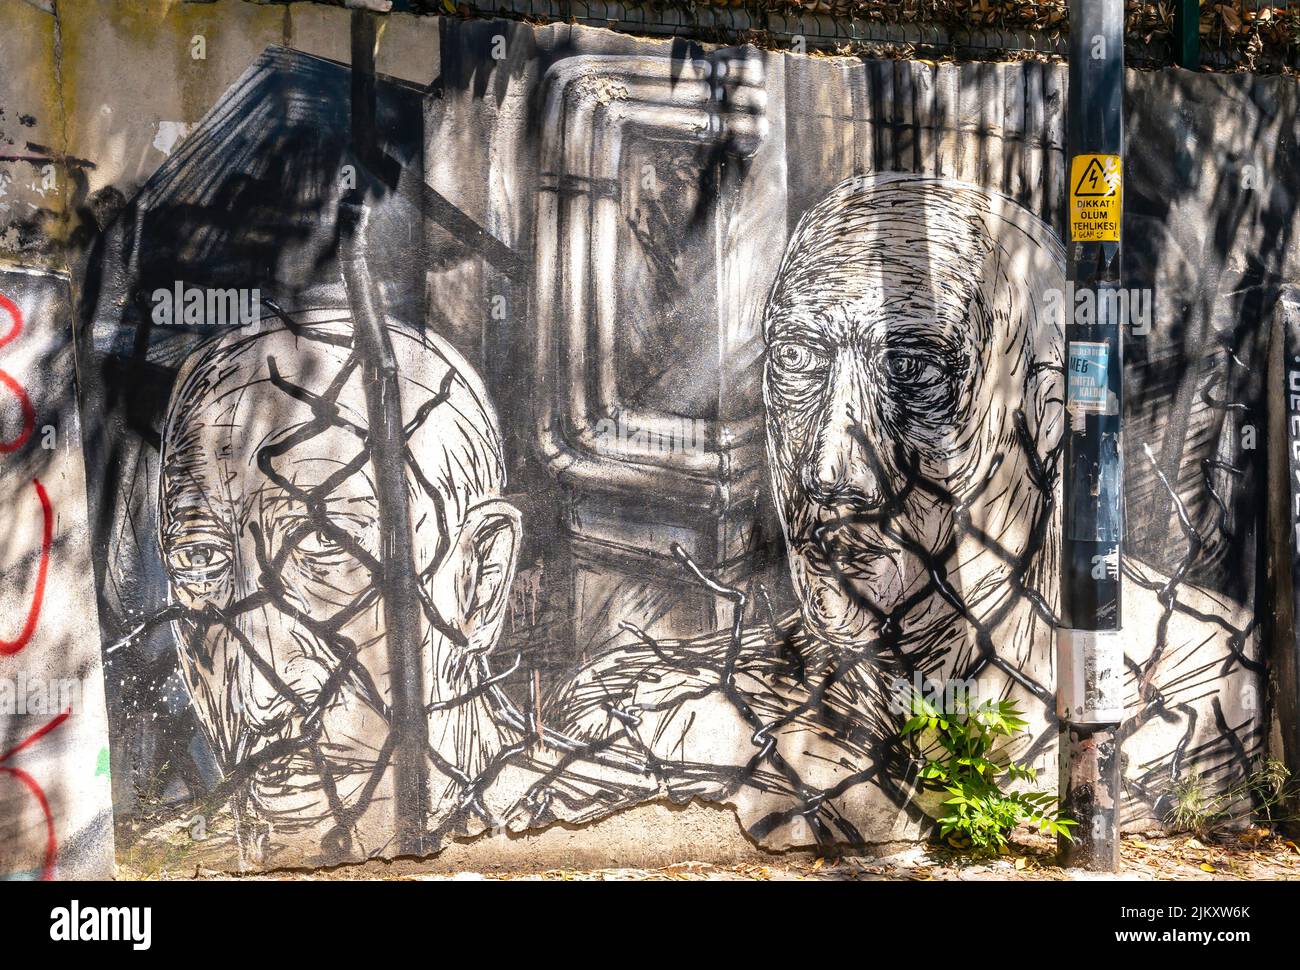 Arte callejero, mural de Canavar que representa a dos hombres detrás de una valla en Moda, Kadiköy distrito de Estambul, Turquía Foto de stock